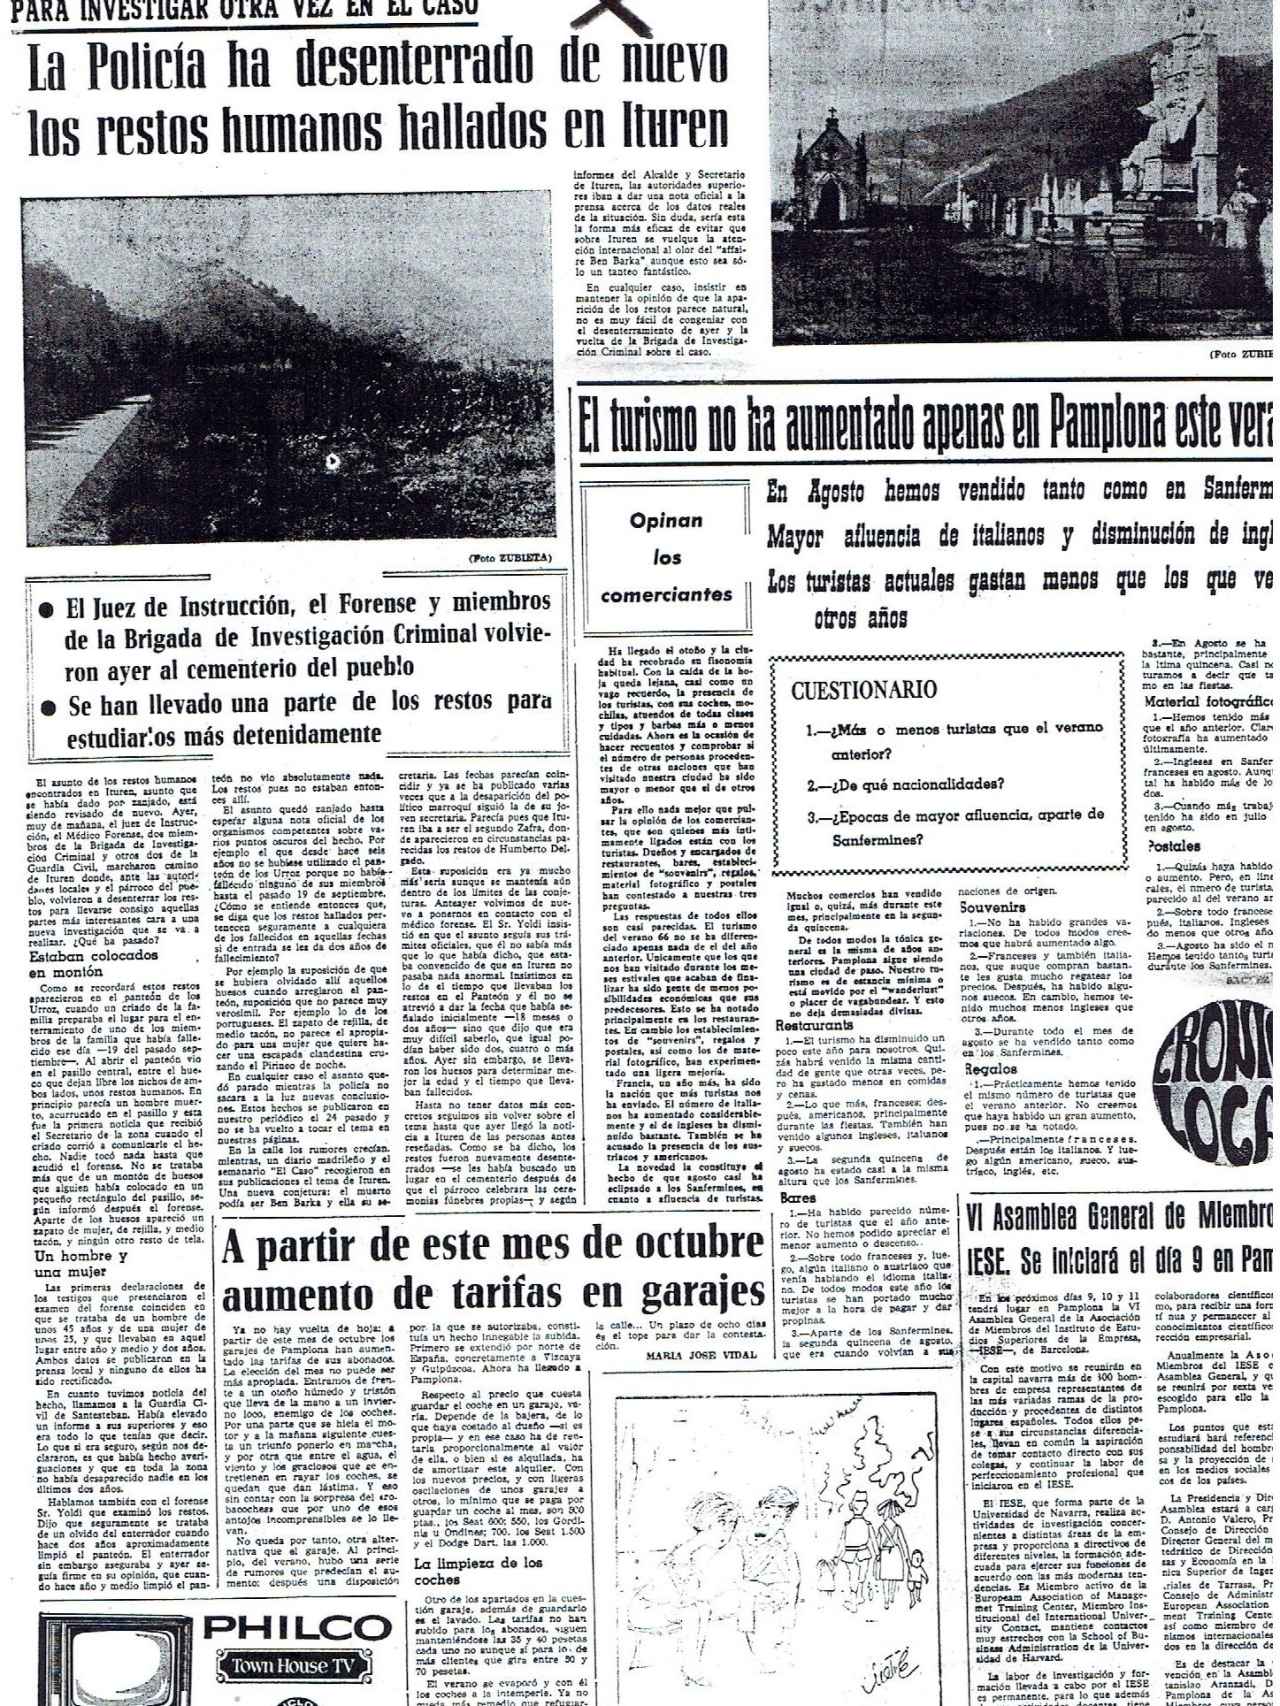 La portada del Diario de Navarra informando sobre el asesinato de Ben Barka que provocó la ira de Franco.